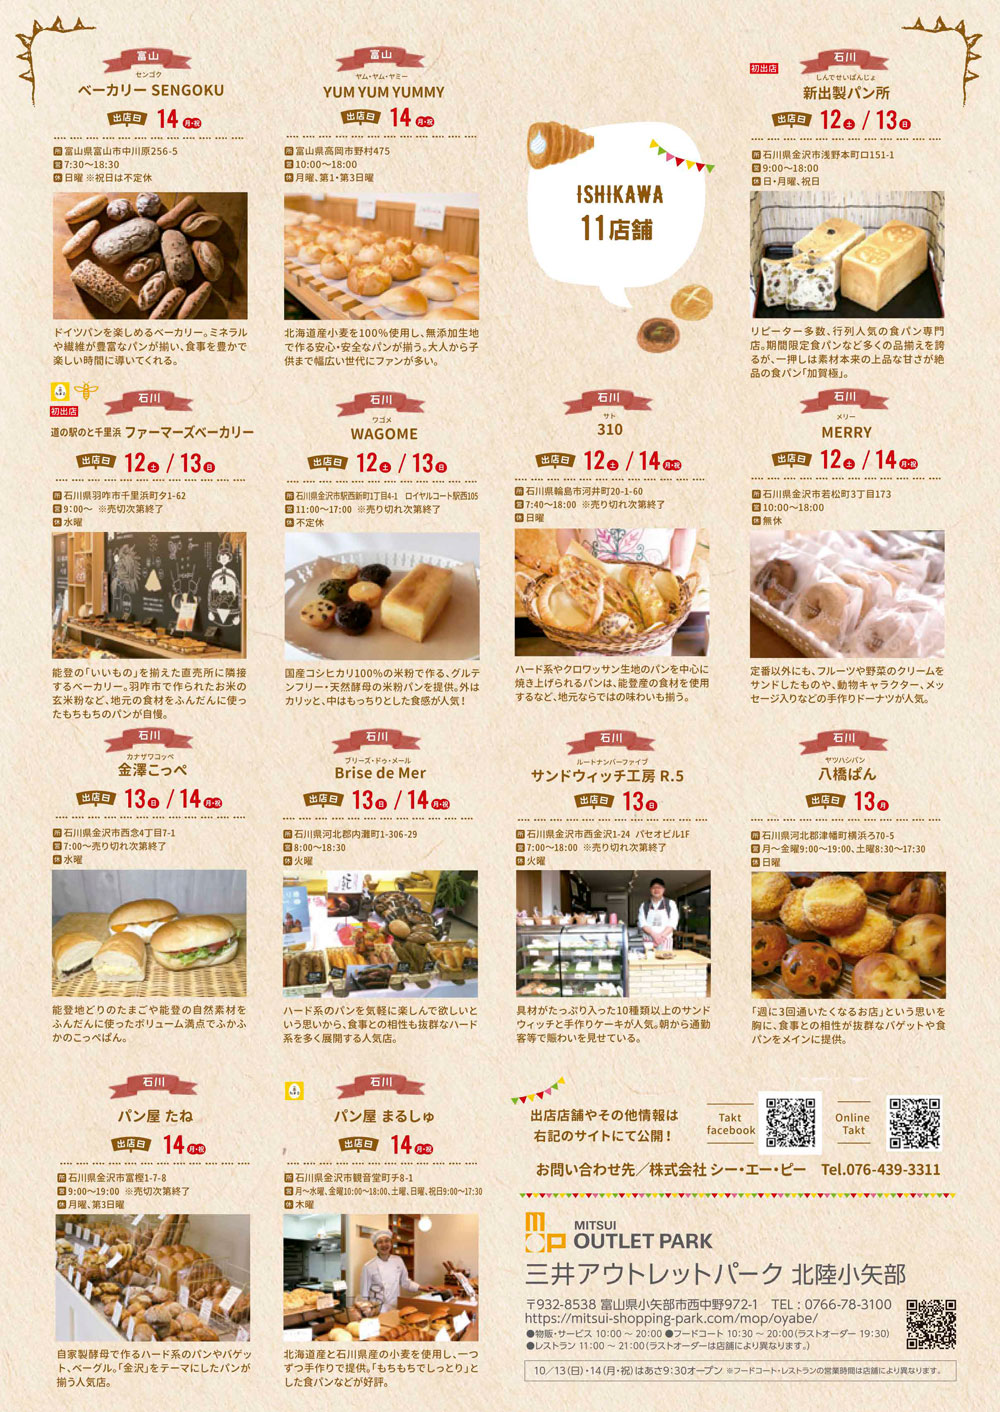 三井アウトレットパークで開催される「北陸パンフェス2019」の石川のパン屋さん